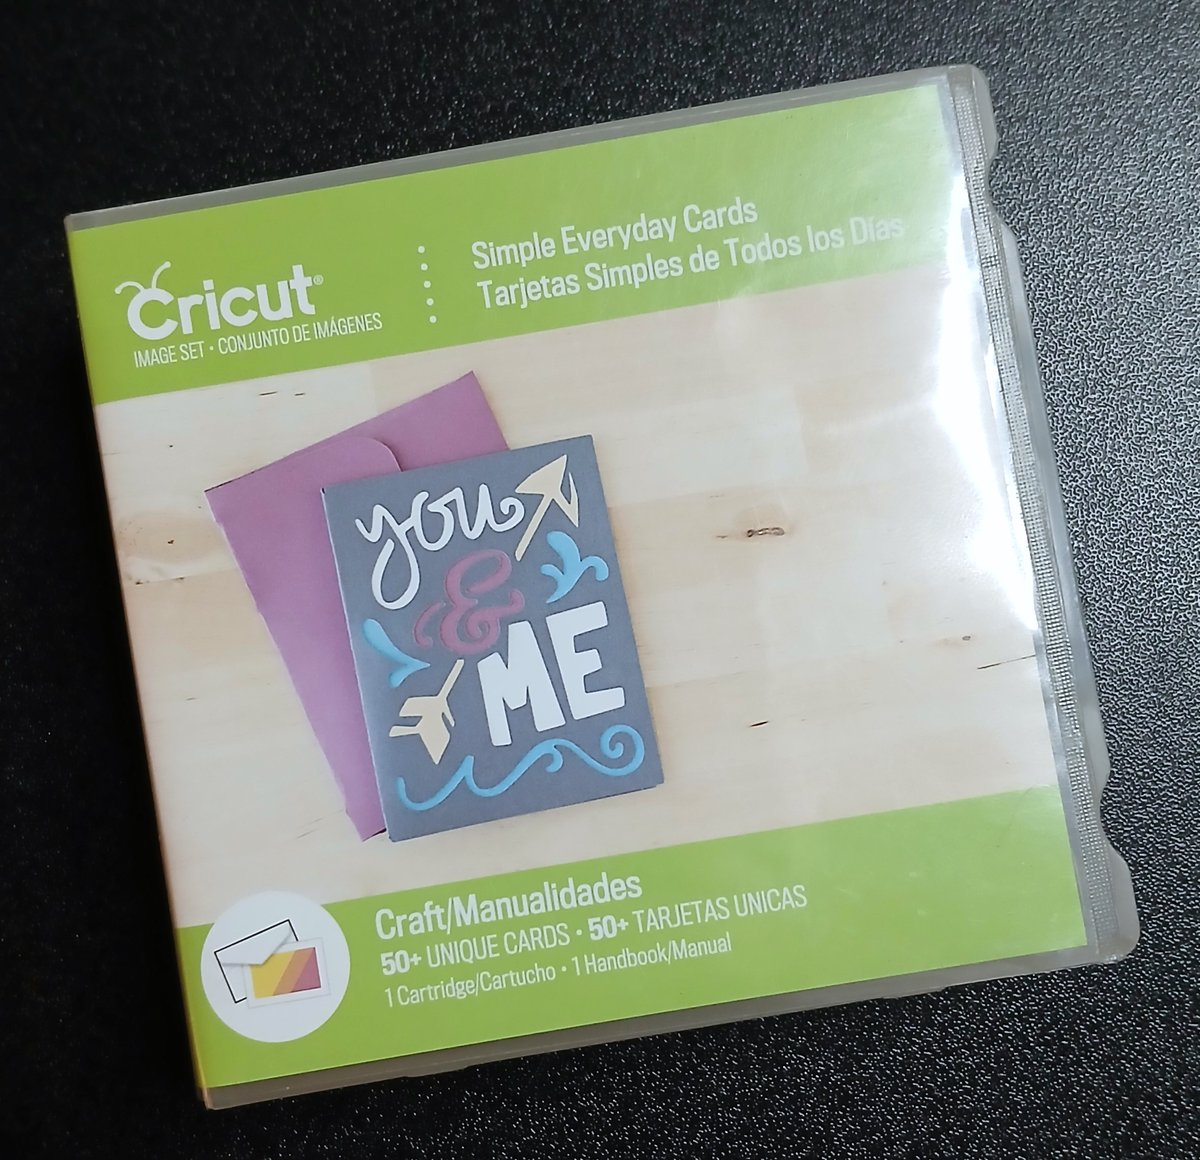 Cricut Simple Everyday Cards Cartridge Complete W/ Original Paperwork
#Cricut #SimpleEverydayCards #Cards #CardMaking #Cartridge #Ebay #CynfulThings

ebay.com/itm/3353208257…